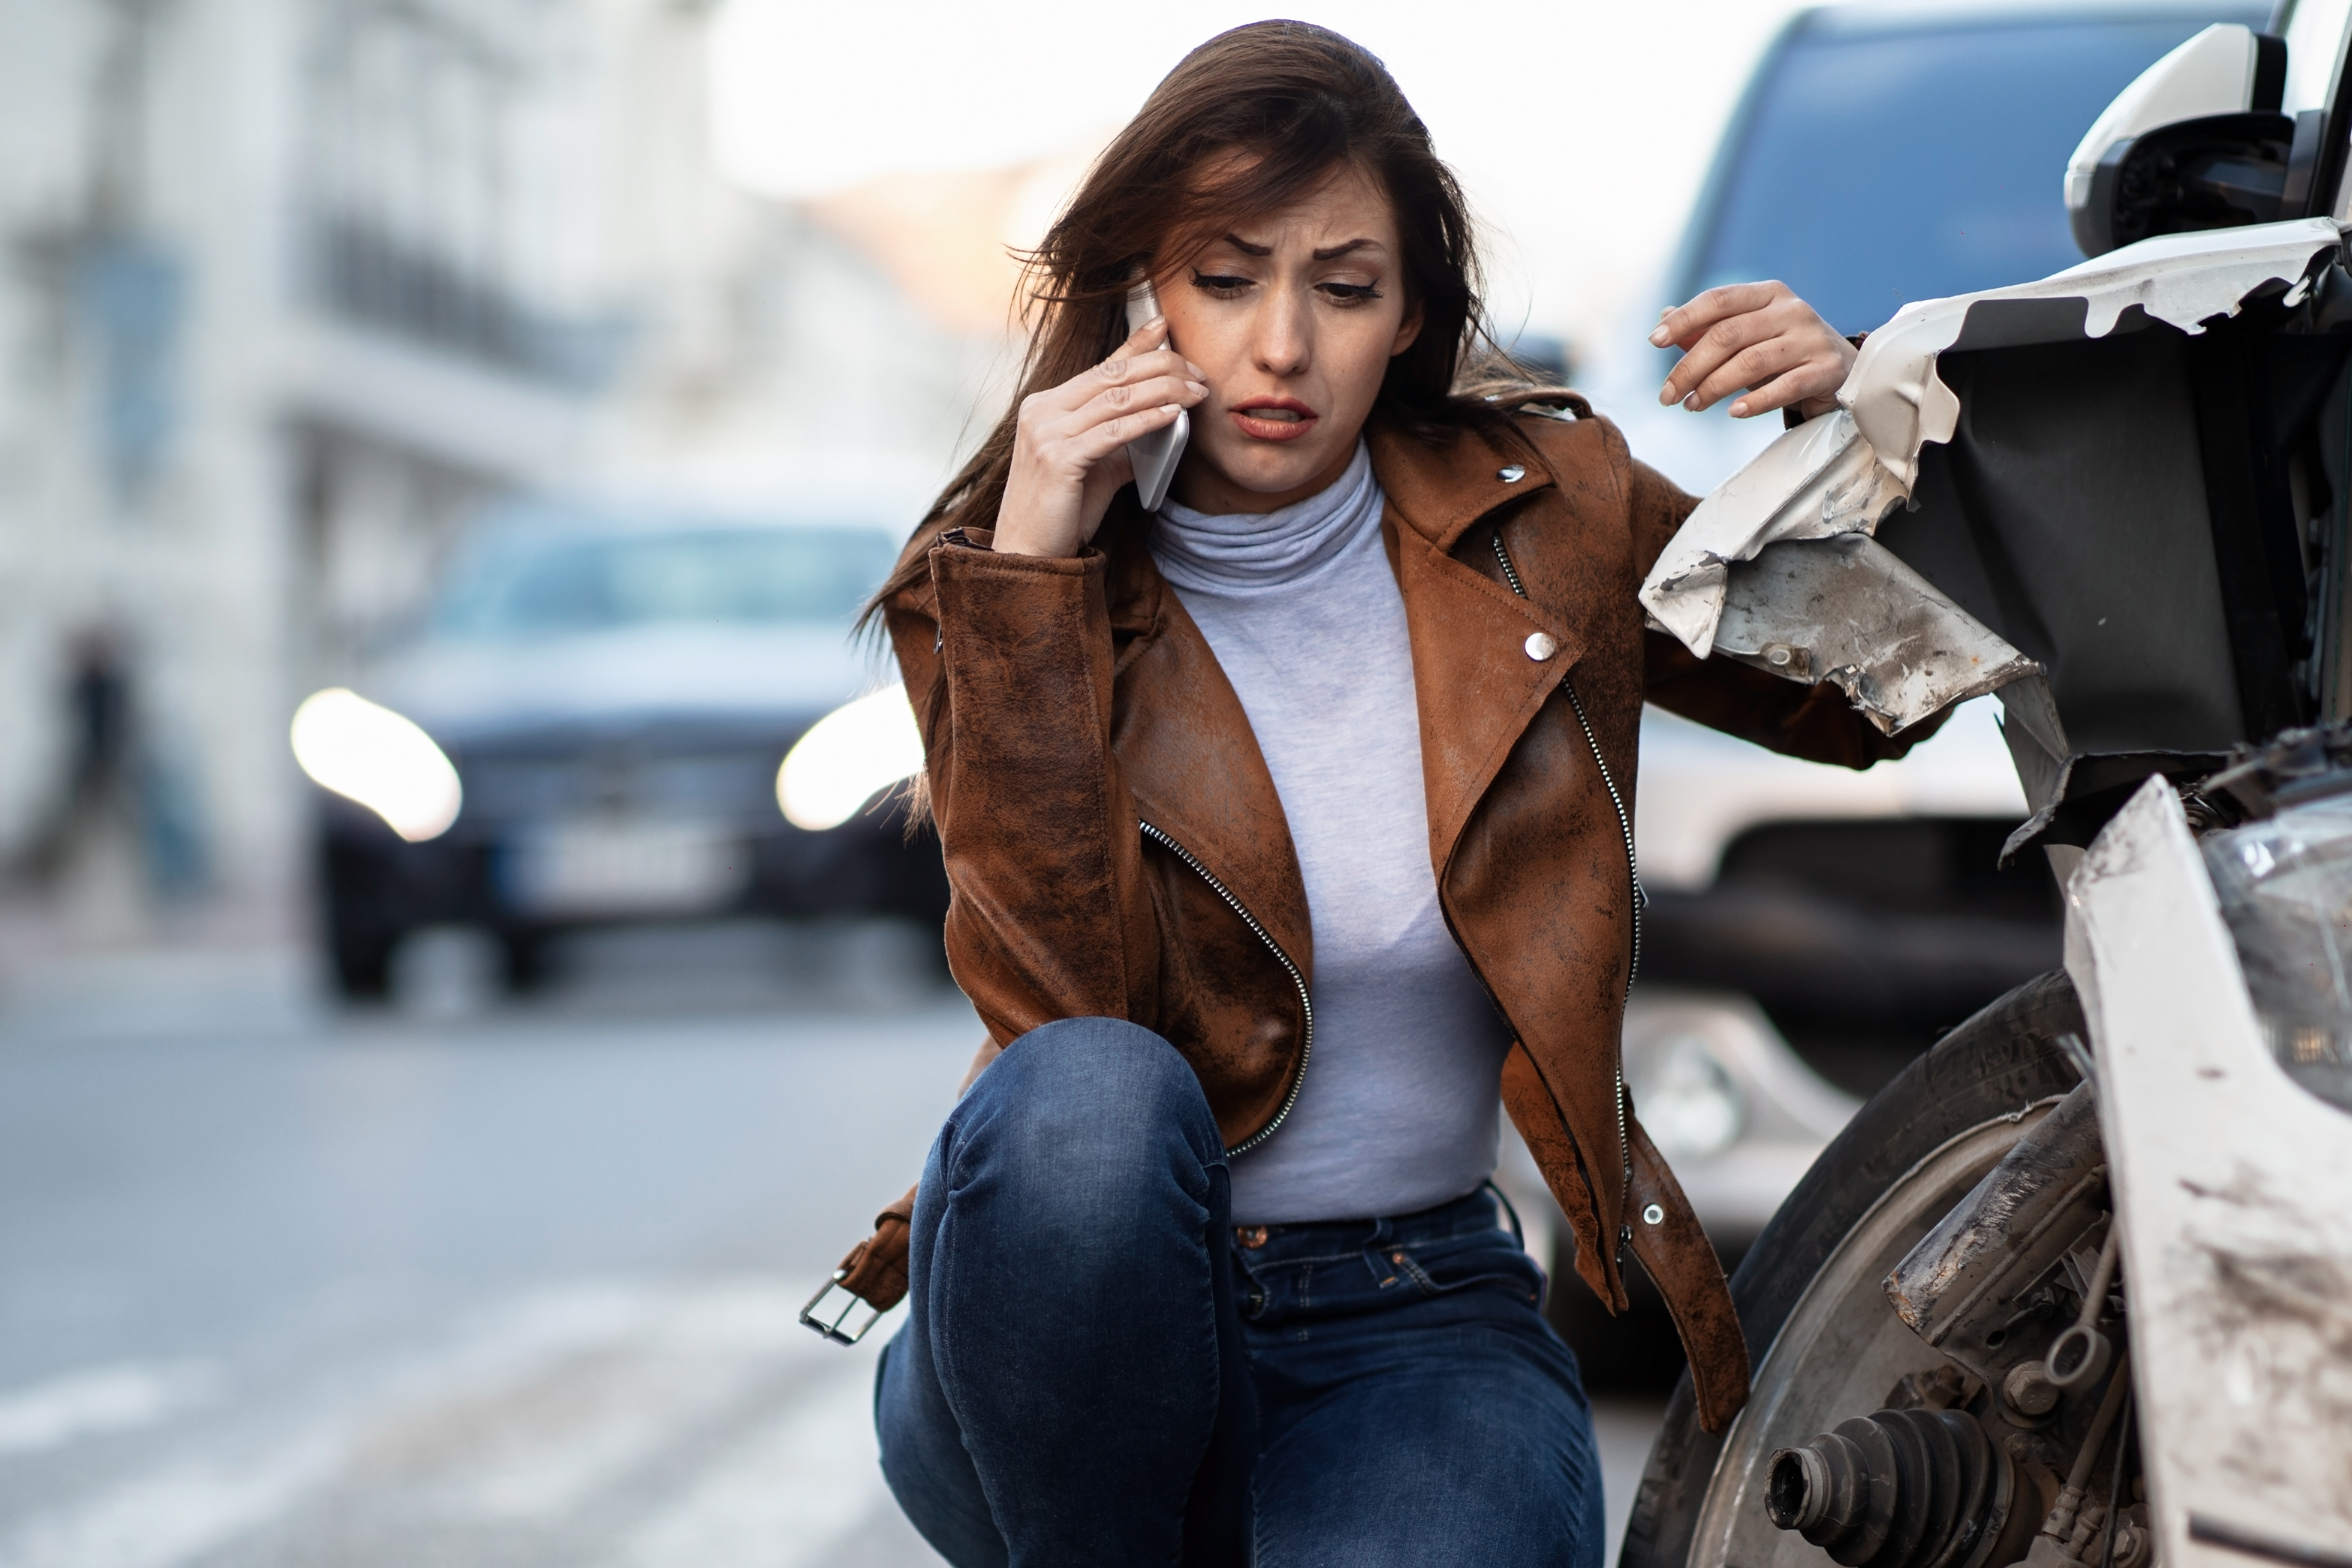 Uma mulher de jaqueta de couro marrom está abaixada ao lado de um carro branco que sofreu colisão e está com a junta homocinética quebrada. Ela fala ao telefone com expressão triste.